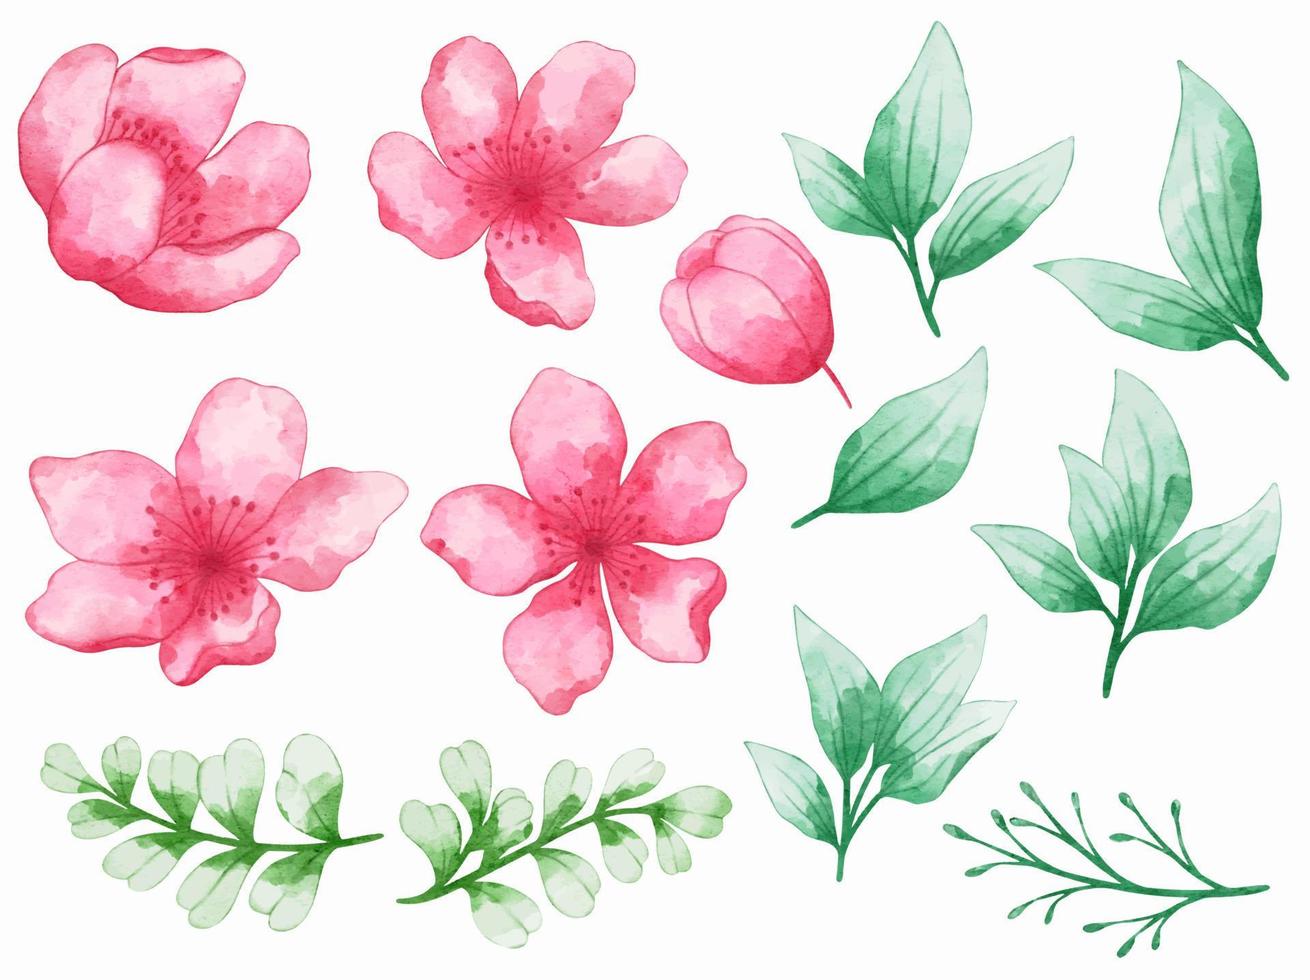 Flowers arrangement watercolor vector